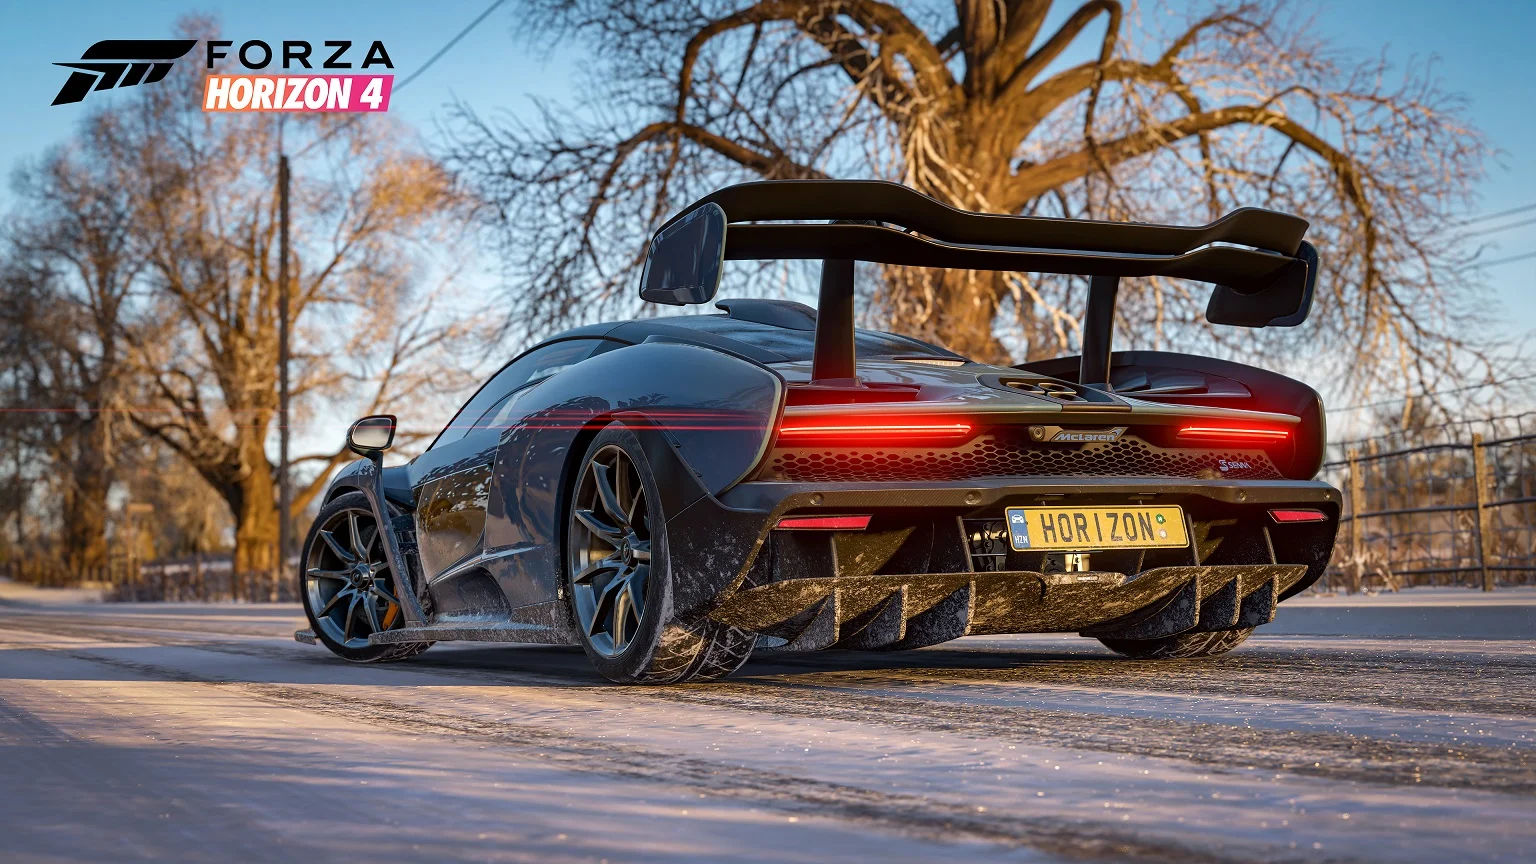 5 безумных приемов экстремального вождения, которые могут пригодиться в Forza Horizon 4 - фото 5